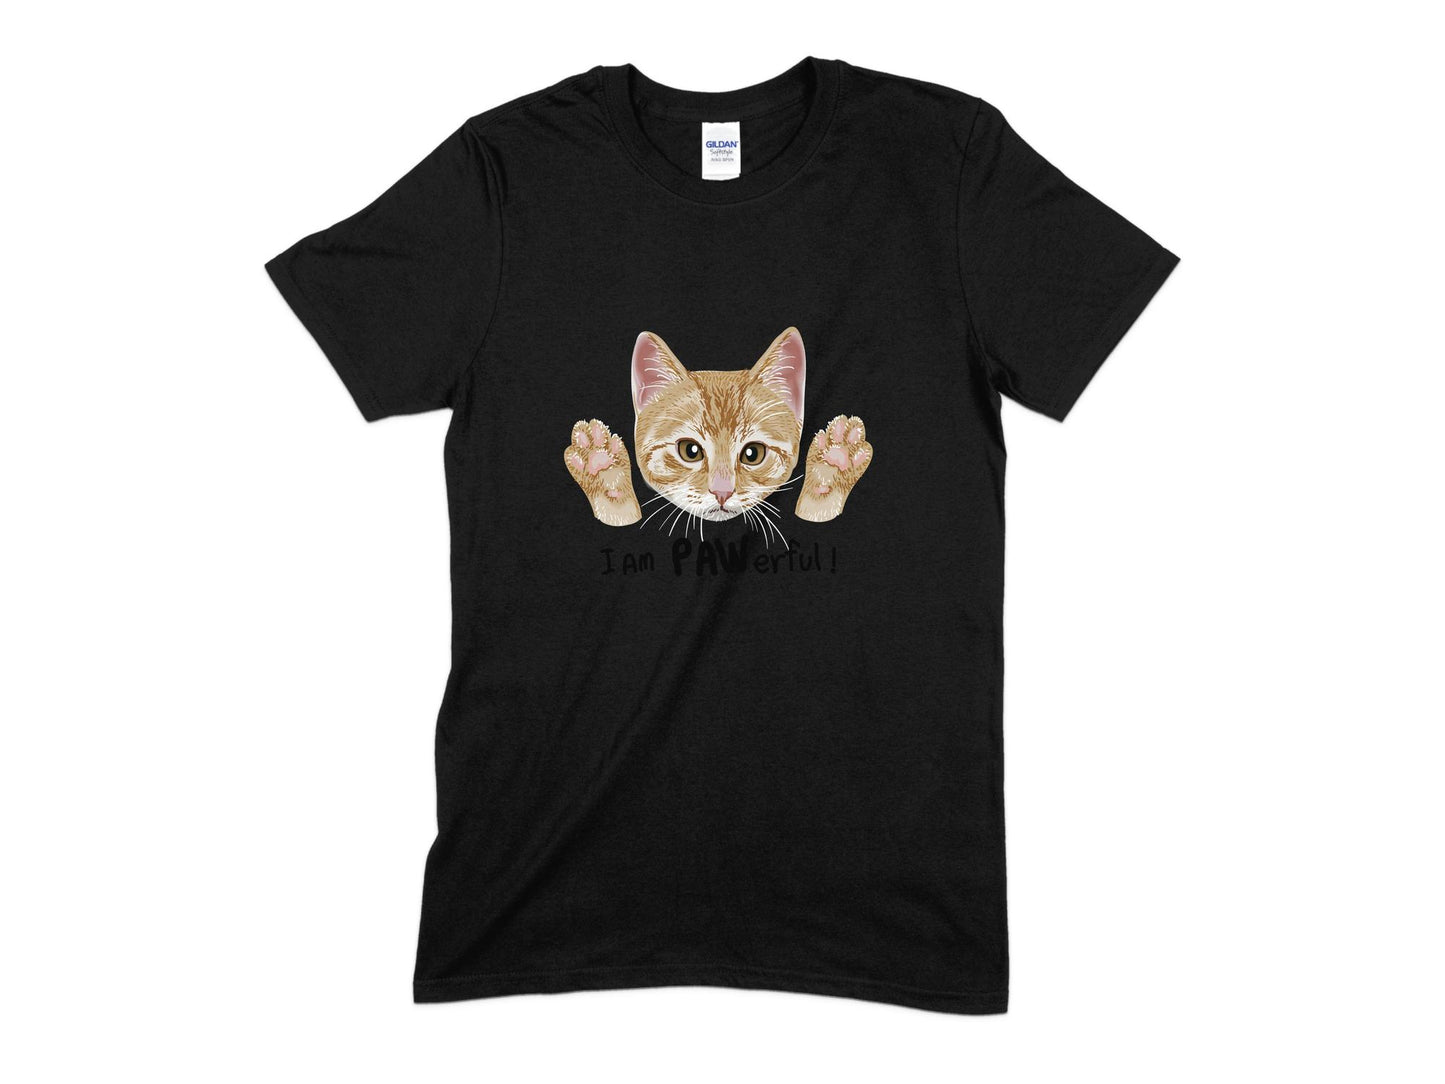 I am Paw-rful Cat T-Shirt, Cute Cat Shirt